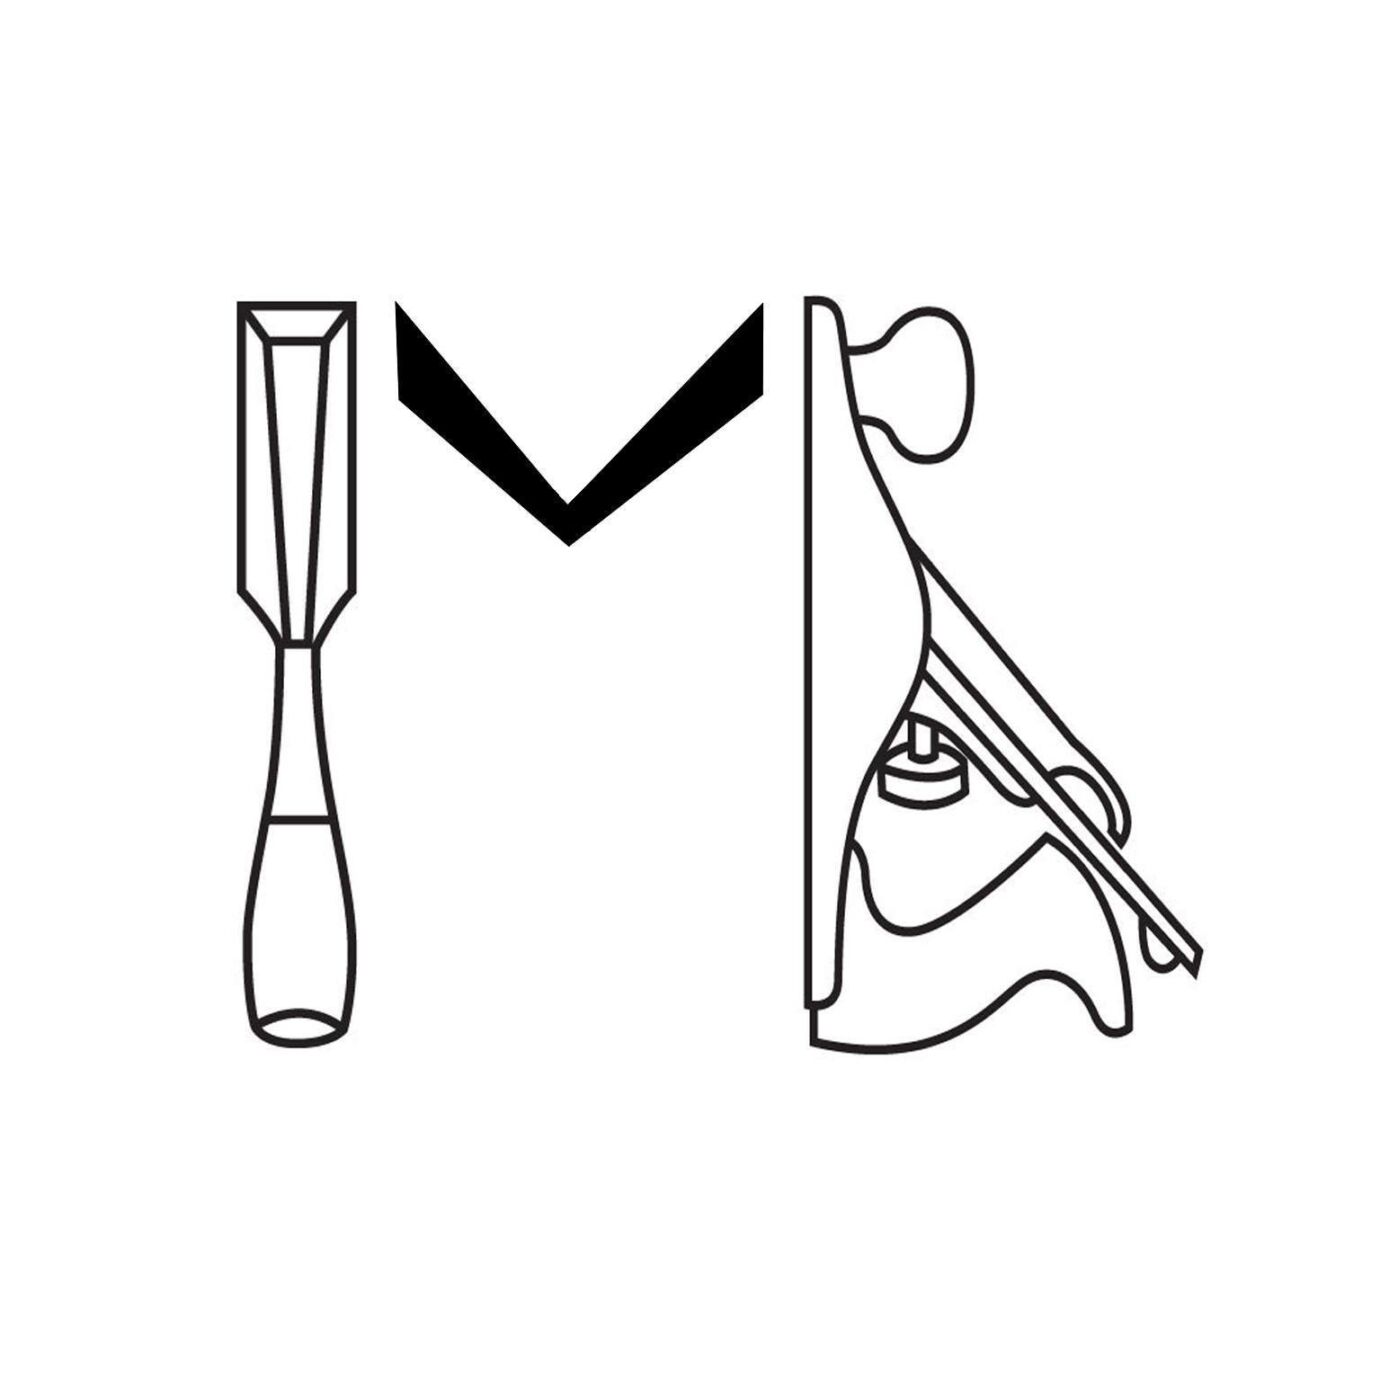 Melanie six logo